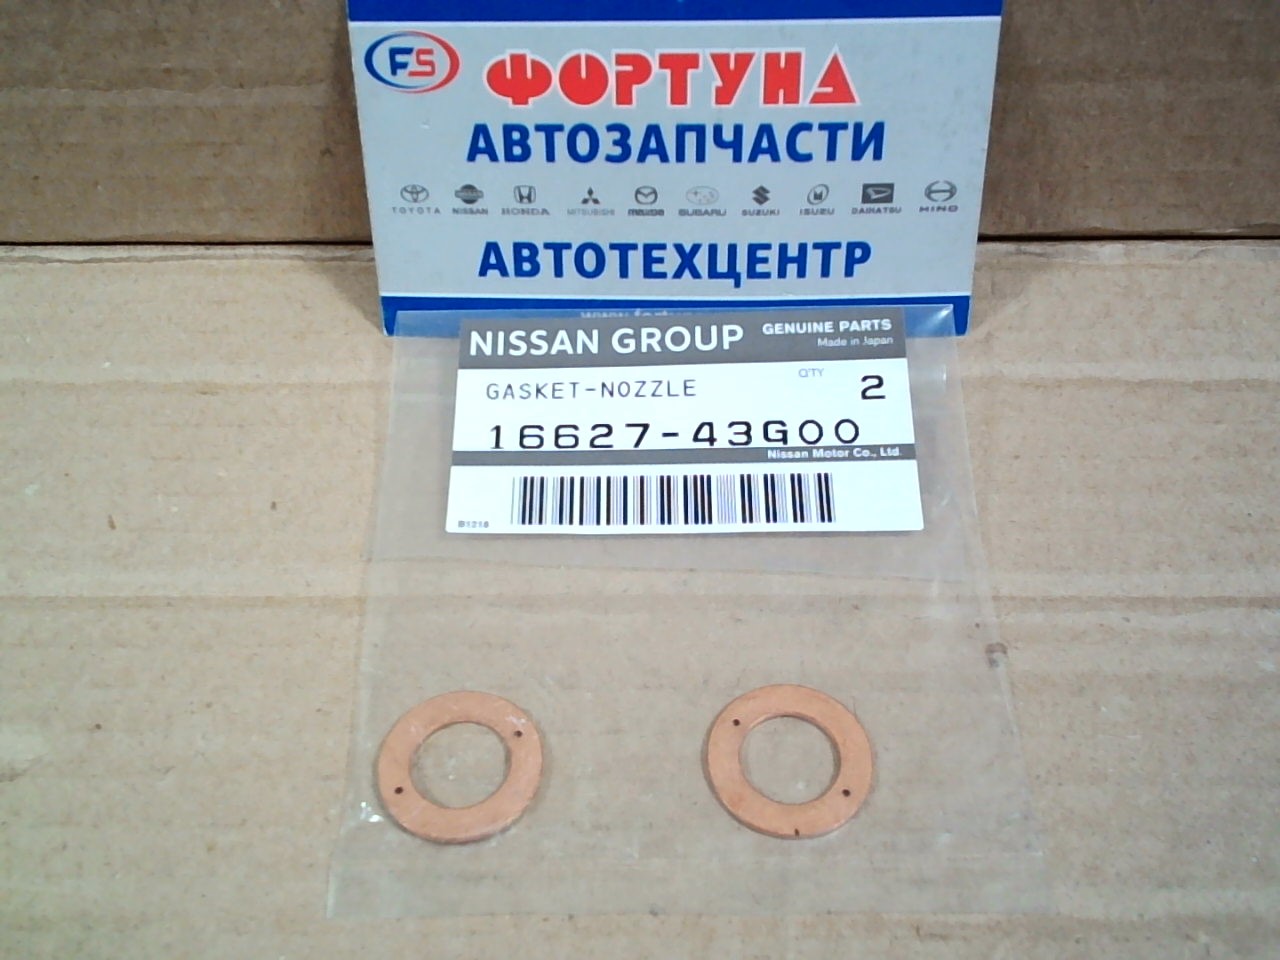 Кольца под форсунки медь 16627-43G00 NISSAN  /TD25,TD27,TD42/ (цена за 1шт) на  